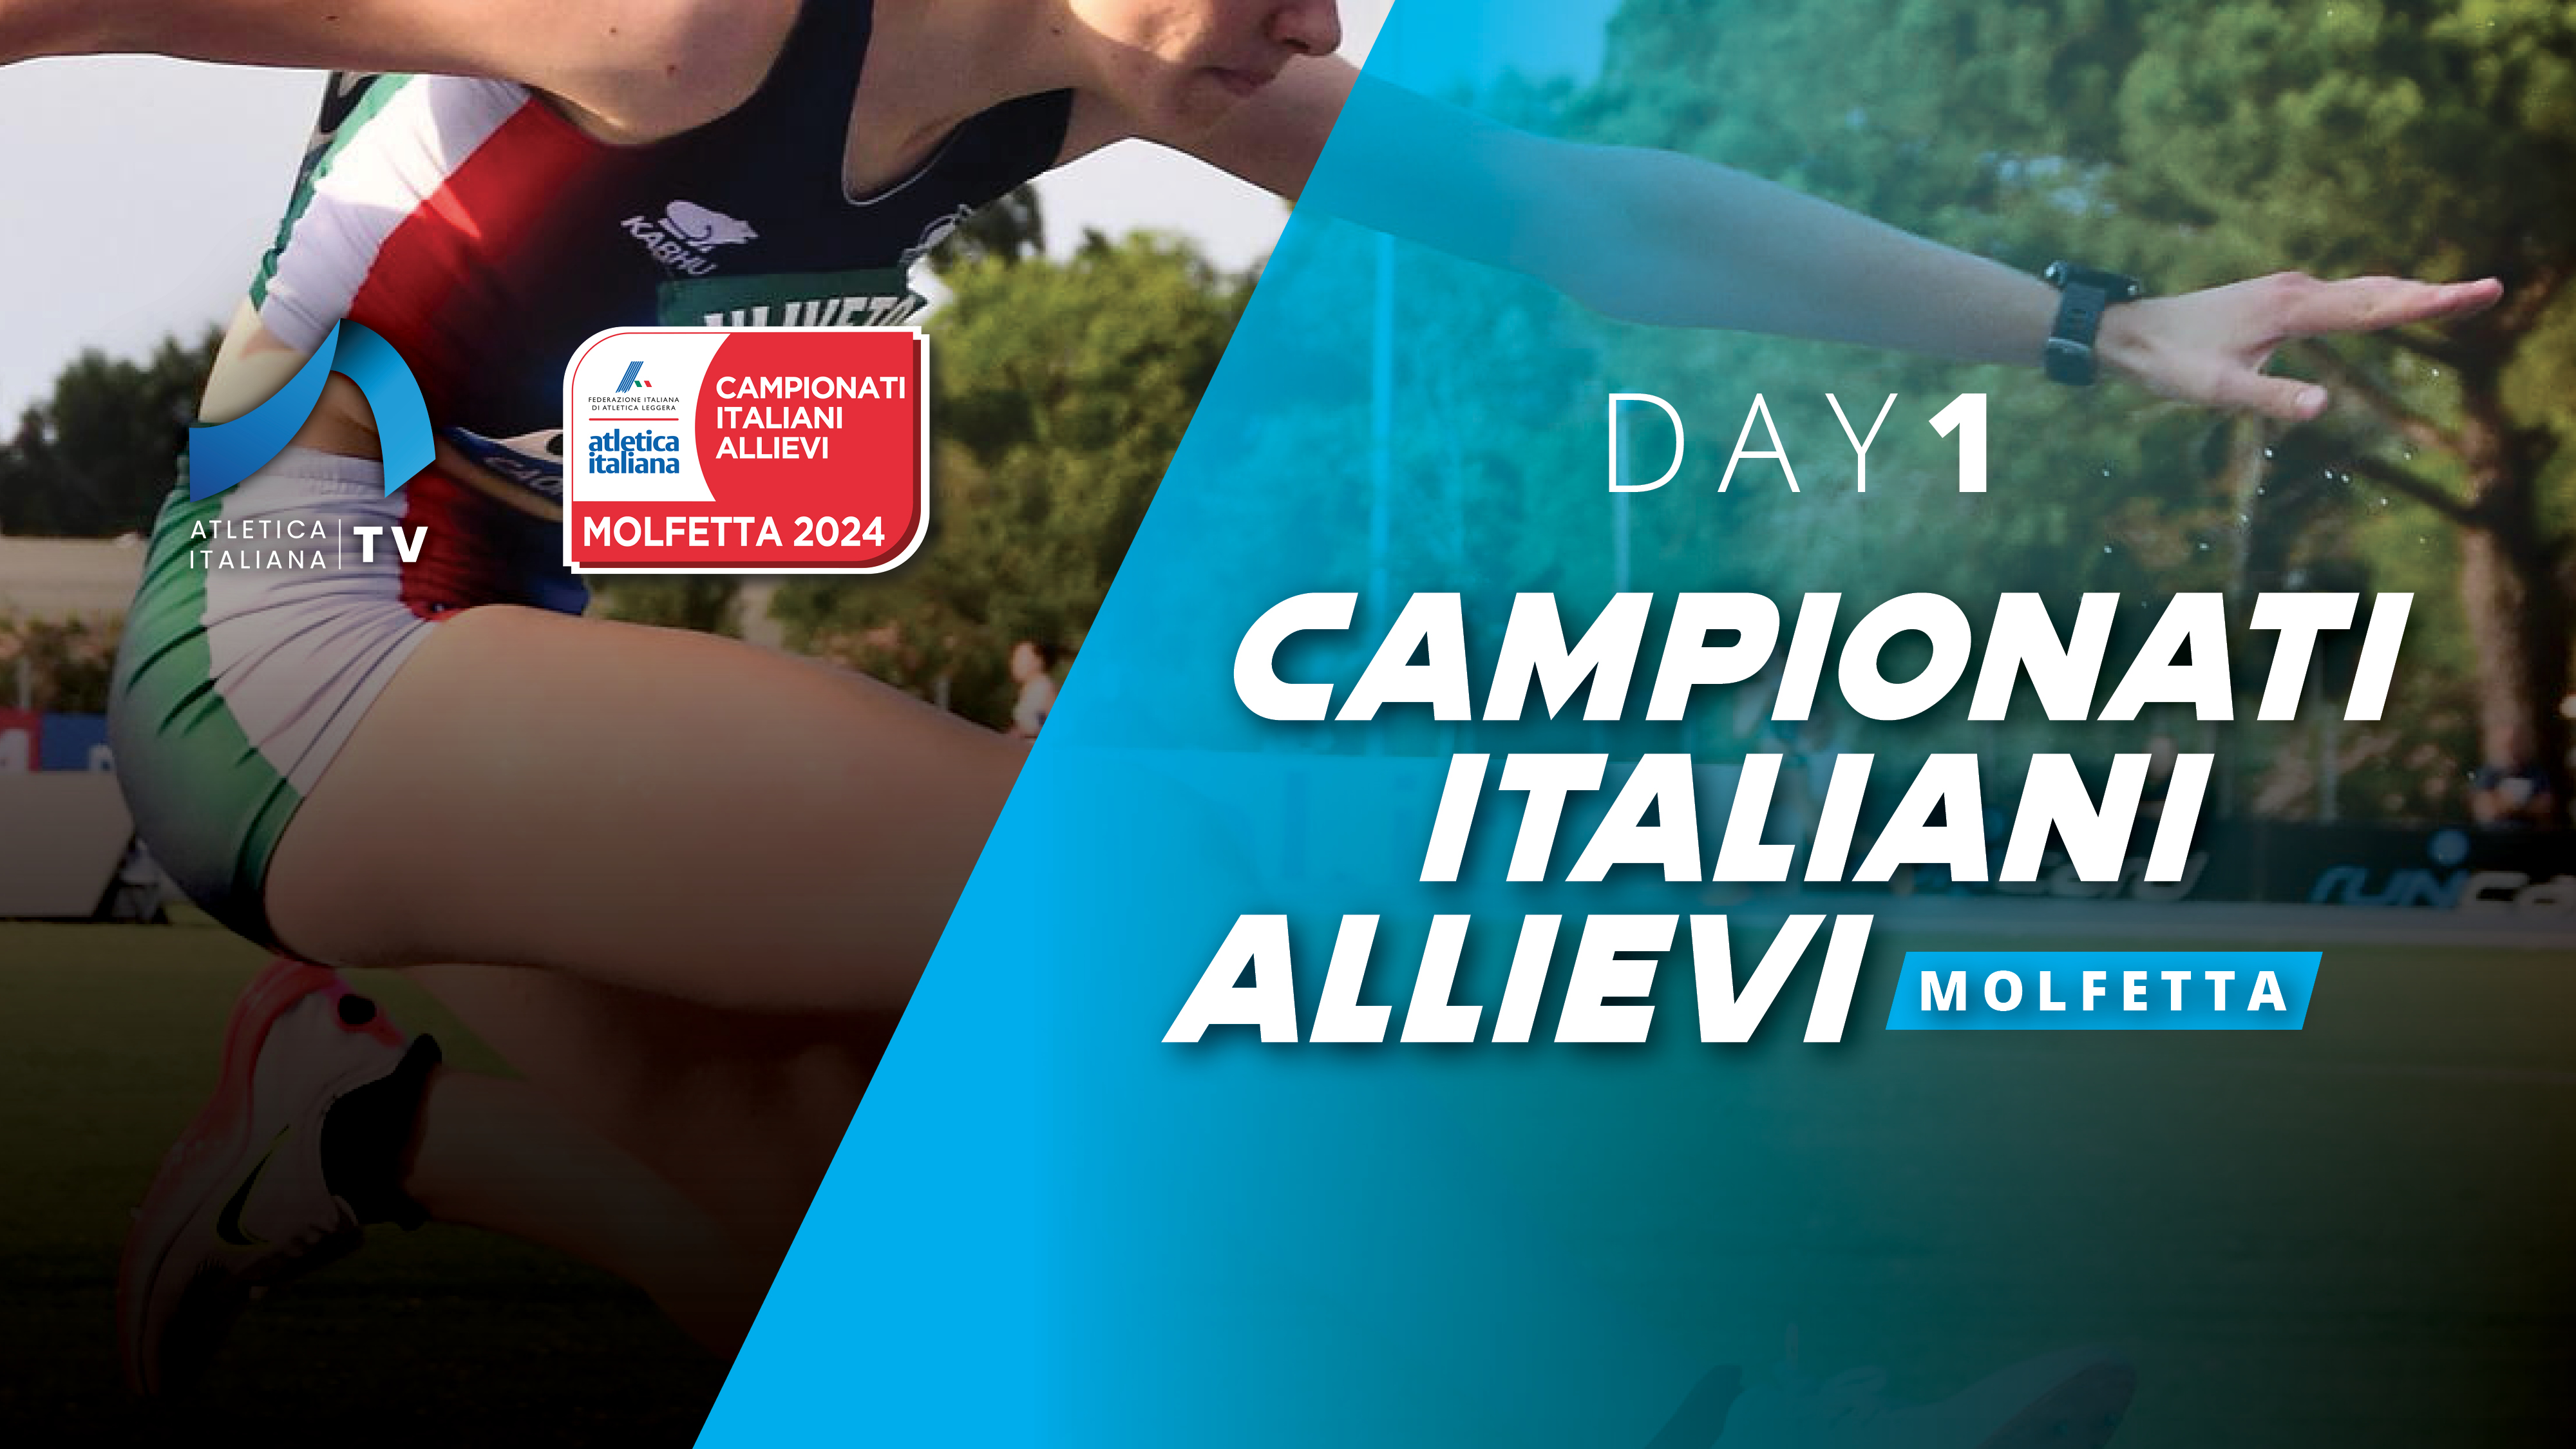 Campionati Italiani Allievi - Molfetta - Day 1